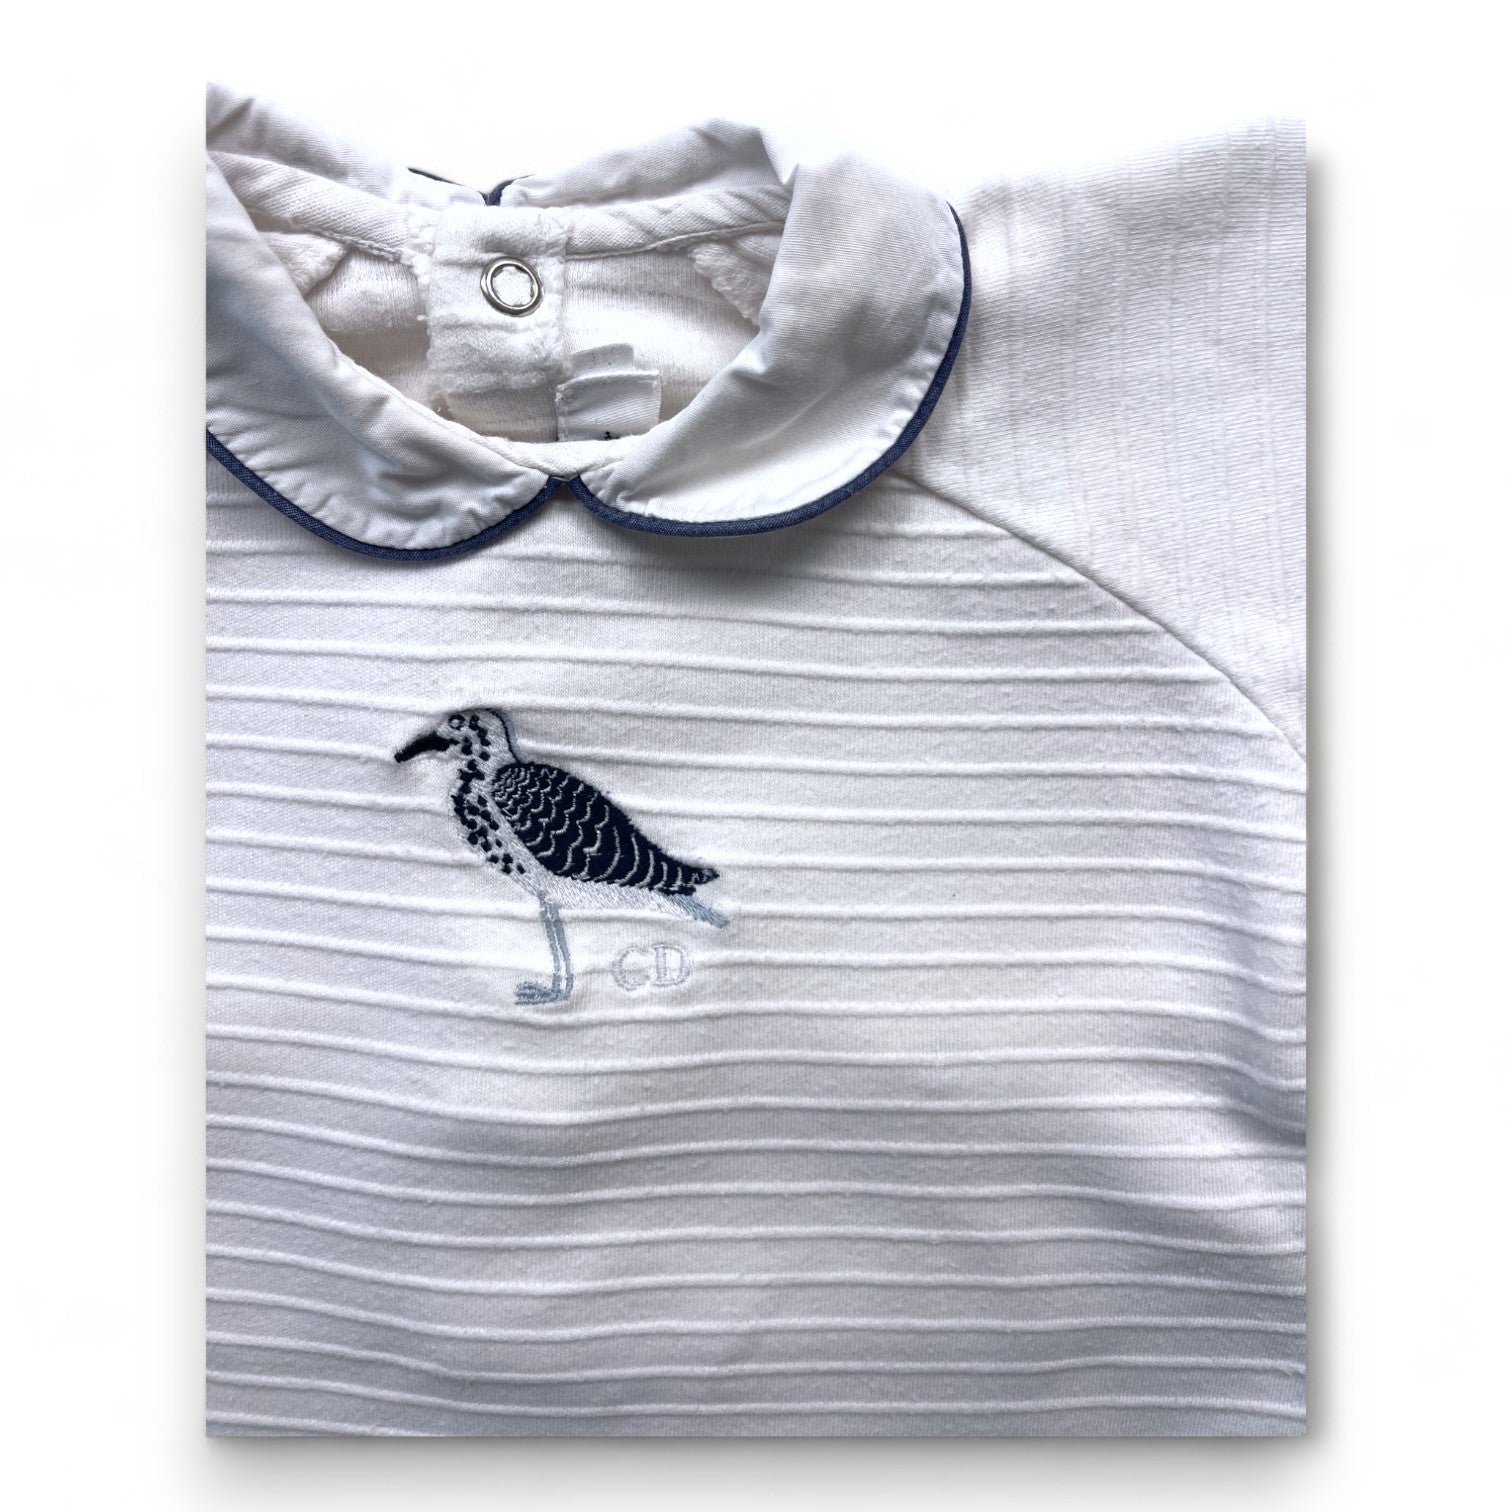 BABY DIOR - Pyjama blanc rayures en relief et oiseau brodé - 3 mois